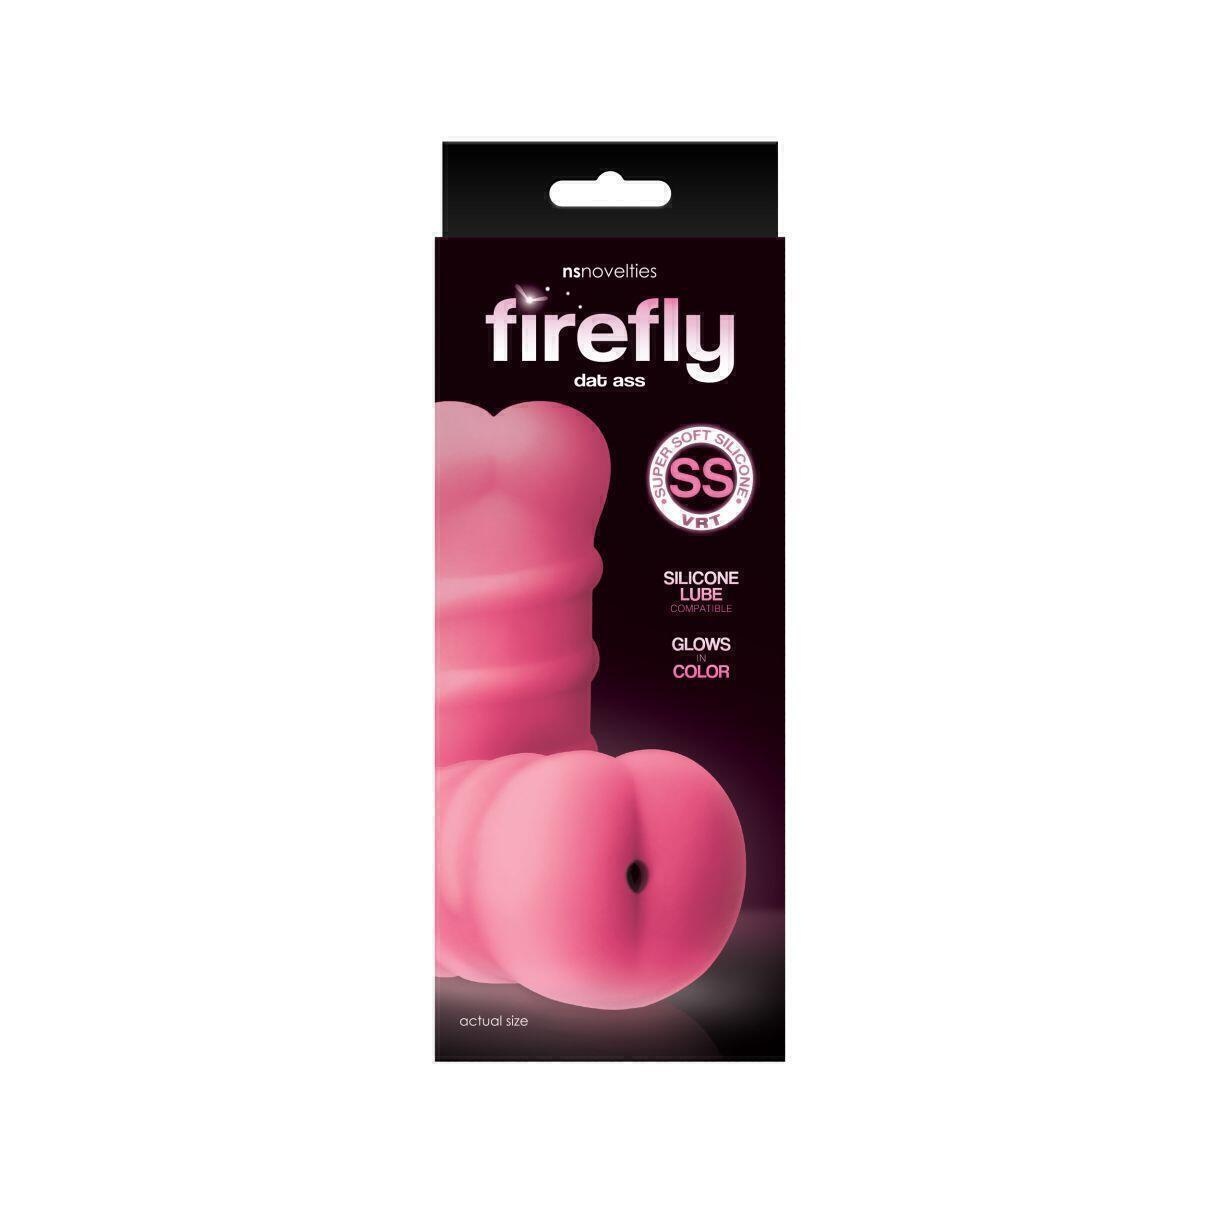 Мастурбатор-анус NSnovelties Firefly Dat Ass, светящийся в темноте, розовый